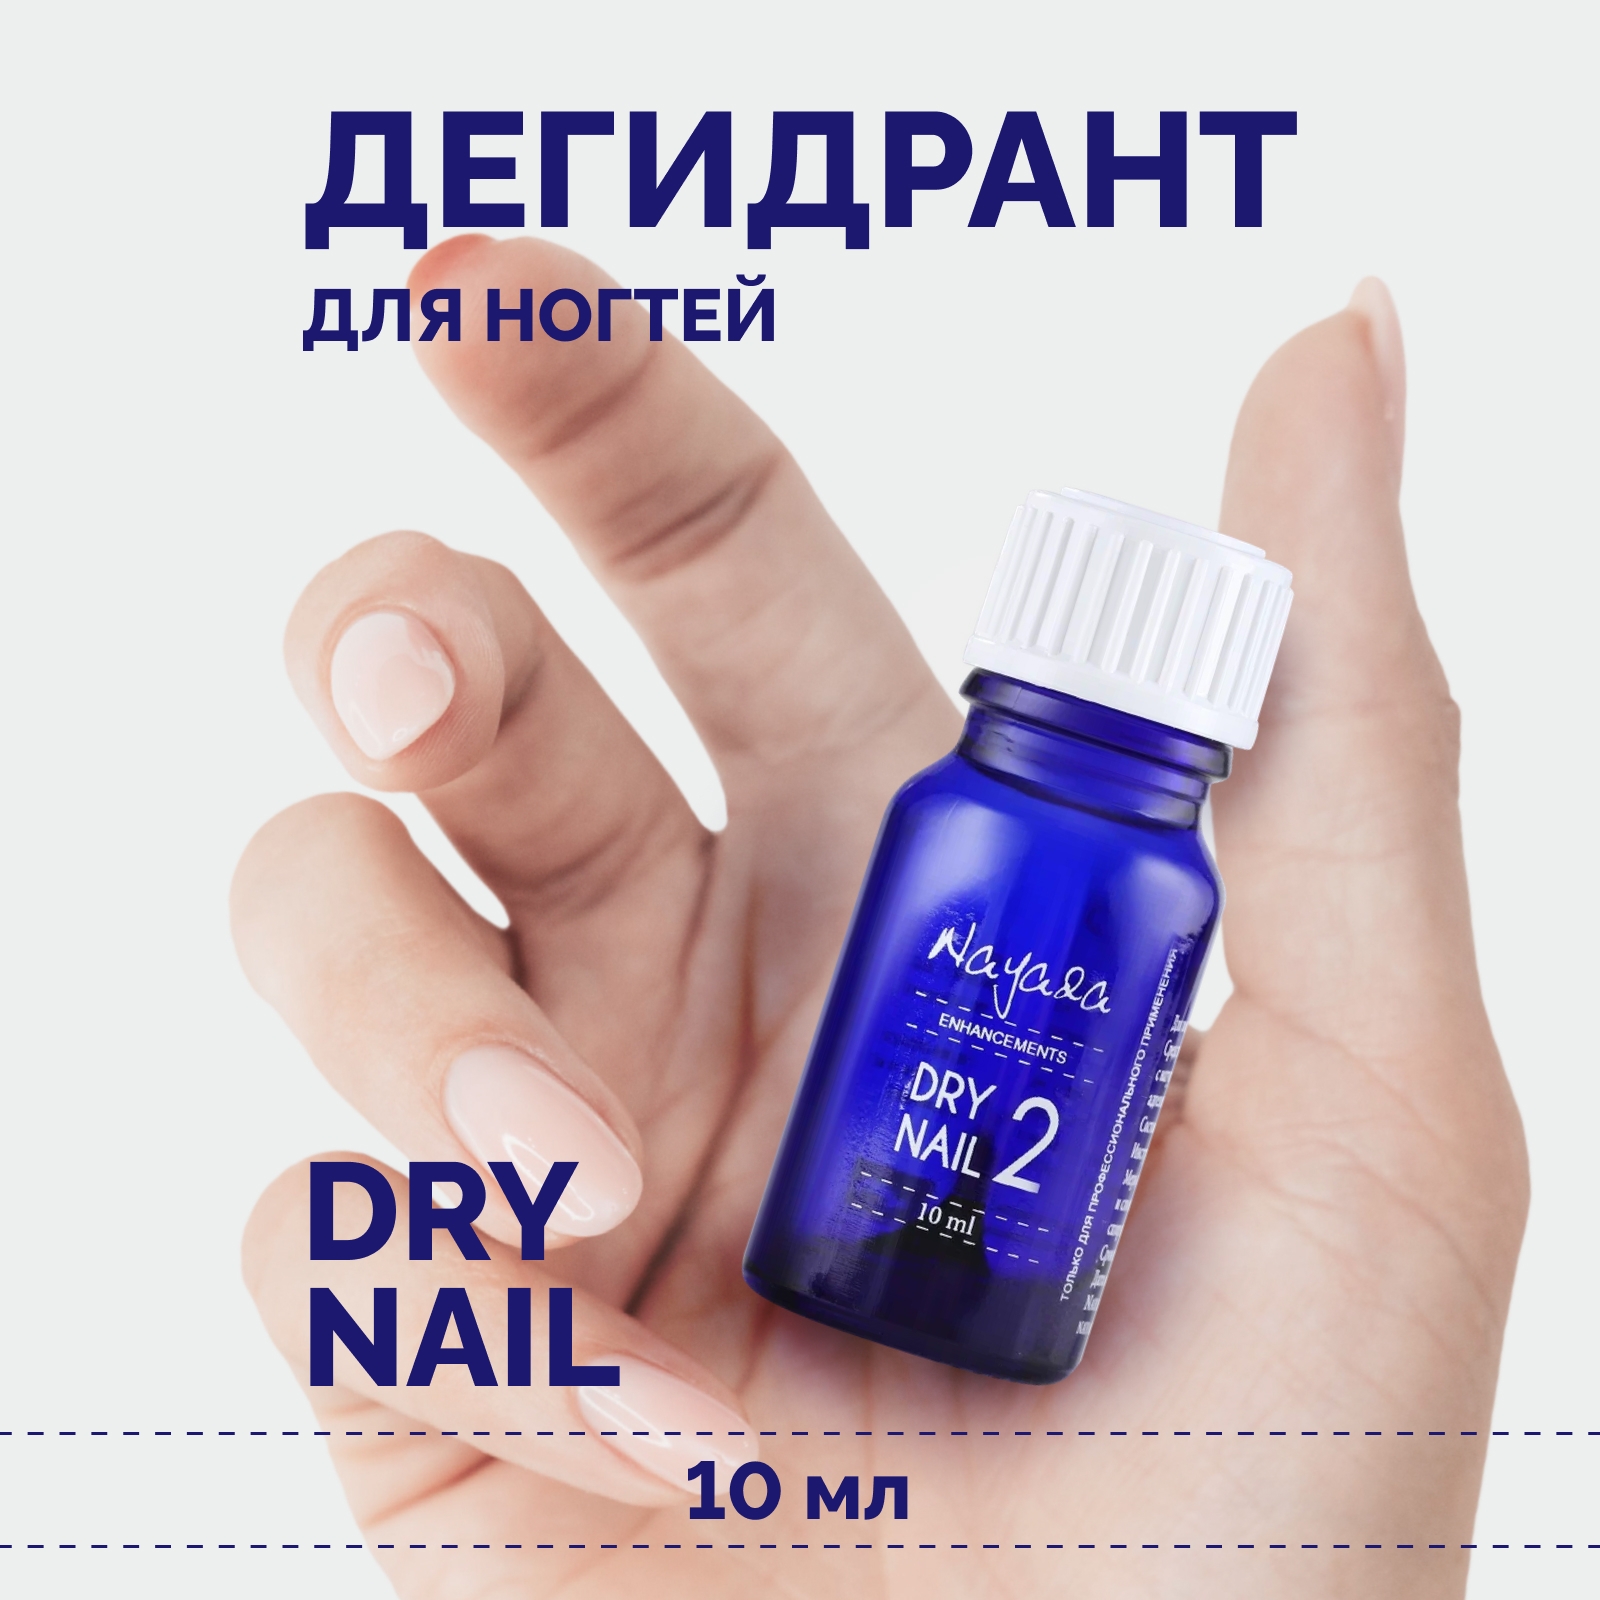 Дегидрант для ногтей Nayada Dry nail обезжириватель, 10 мл lazeti профессиональные маникюрные ножницы для ногтей лезвие 22 мм с ручной заточкой модель 511